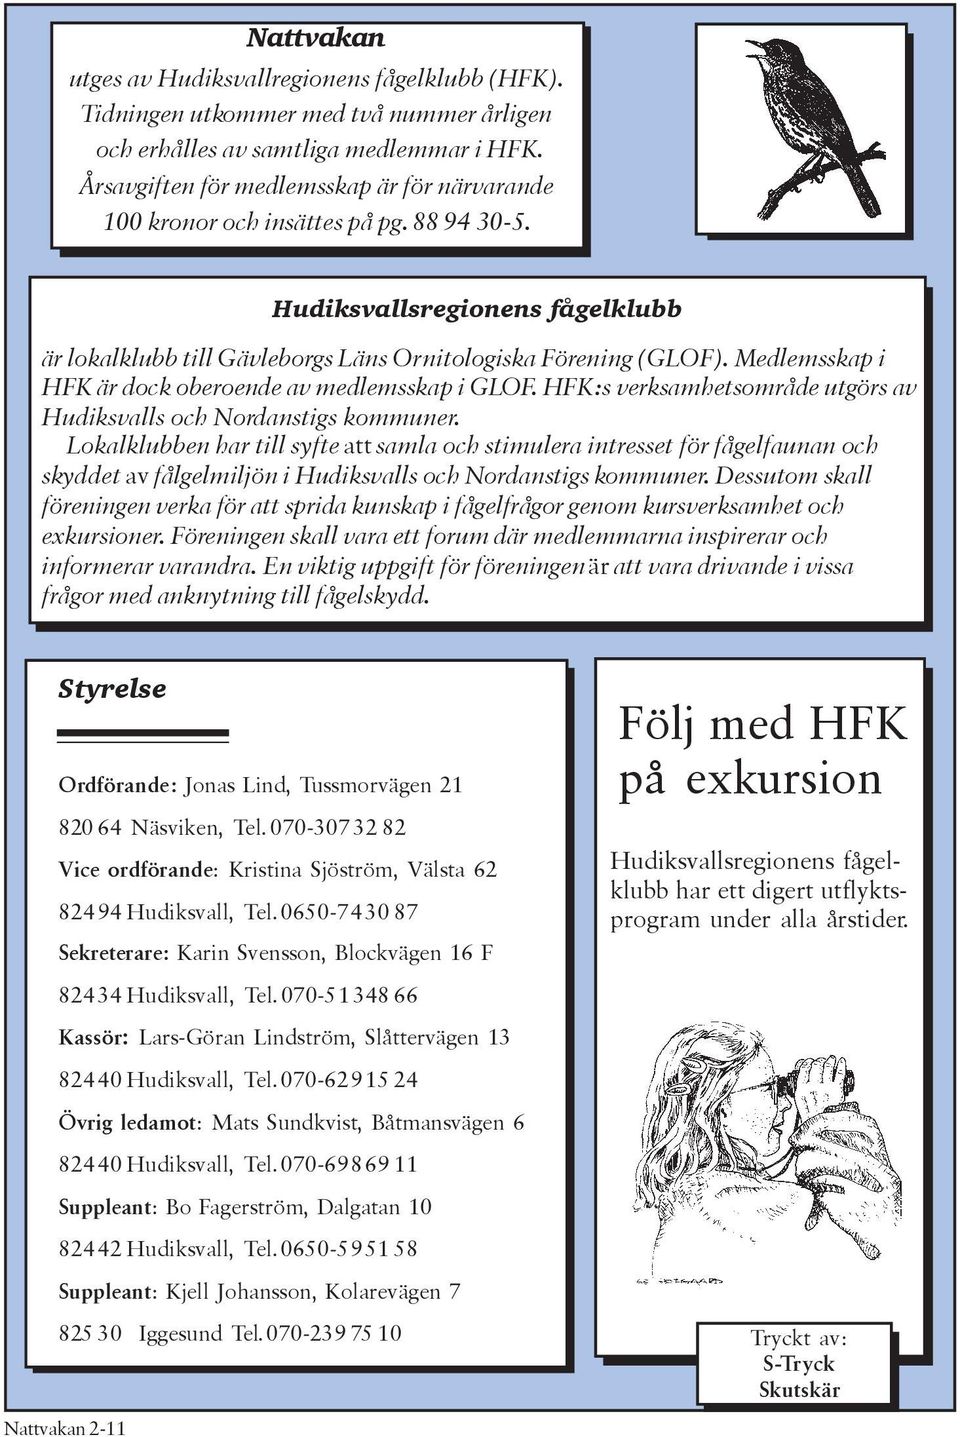 Medlemsskap i HFK är dock oberoende av medlemsskap i GLOF. HFK:s verksamhetsområde utgörs av Hudiksvalls och Nordanstigs kommuner.